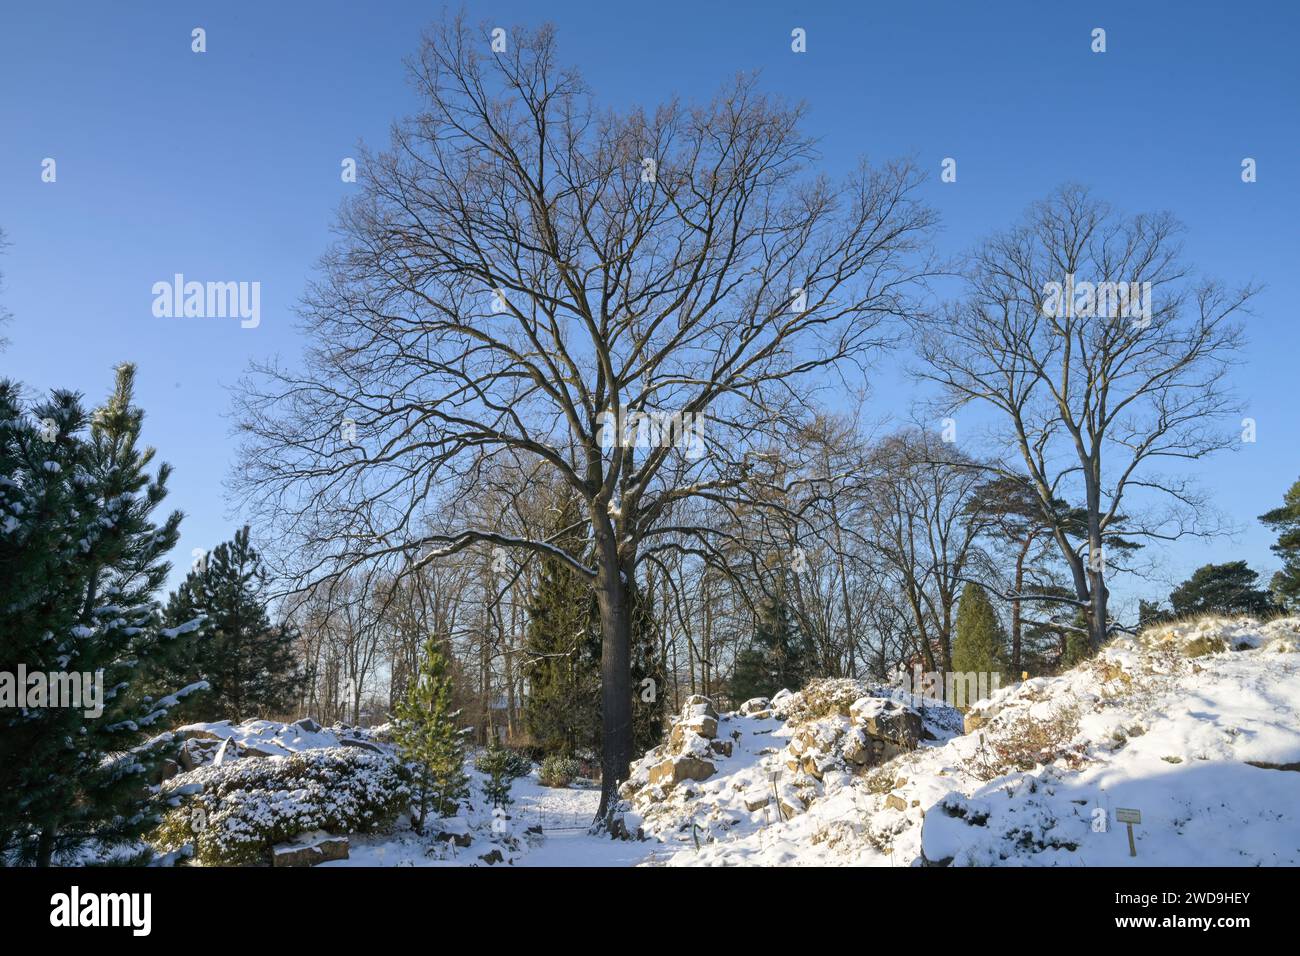 Stieleiche Quercus robur, hiver, Freigelände, Landschaftsgarten, Botanischer Garten, Lichterfelde, Steglitz-Zehlendorf, Berlin, Allemagne Banque D'Images